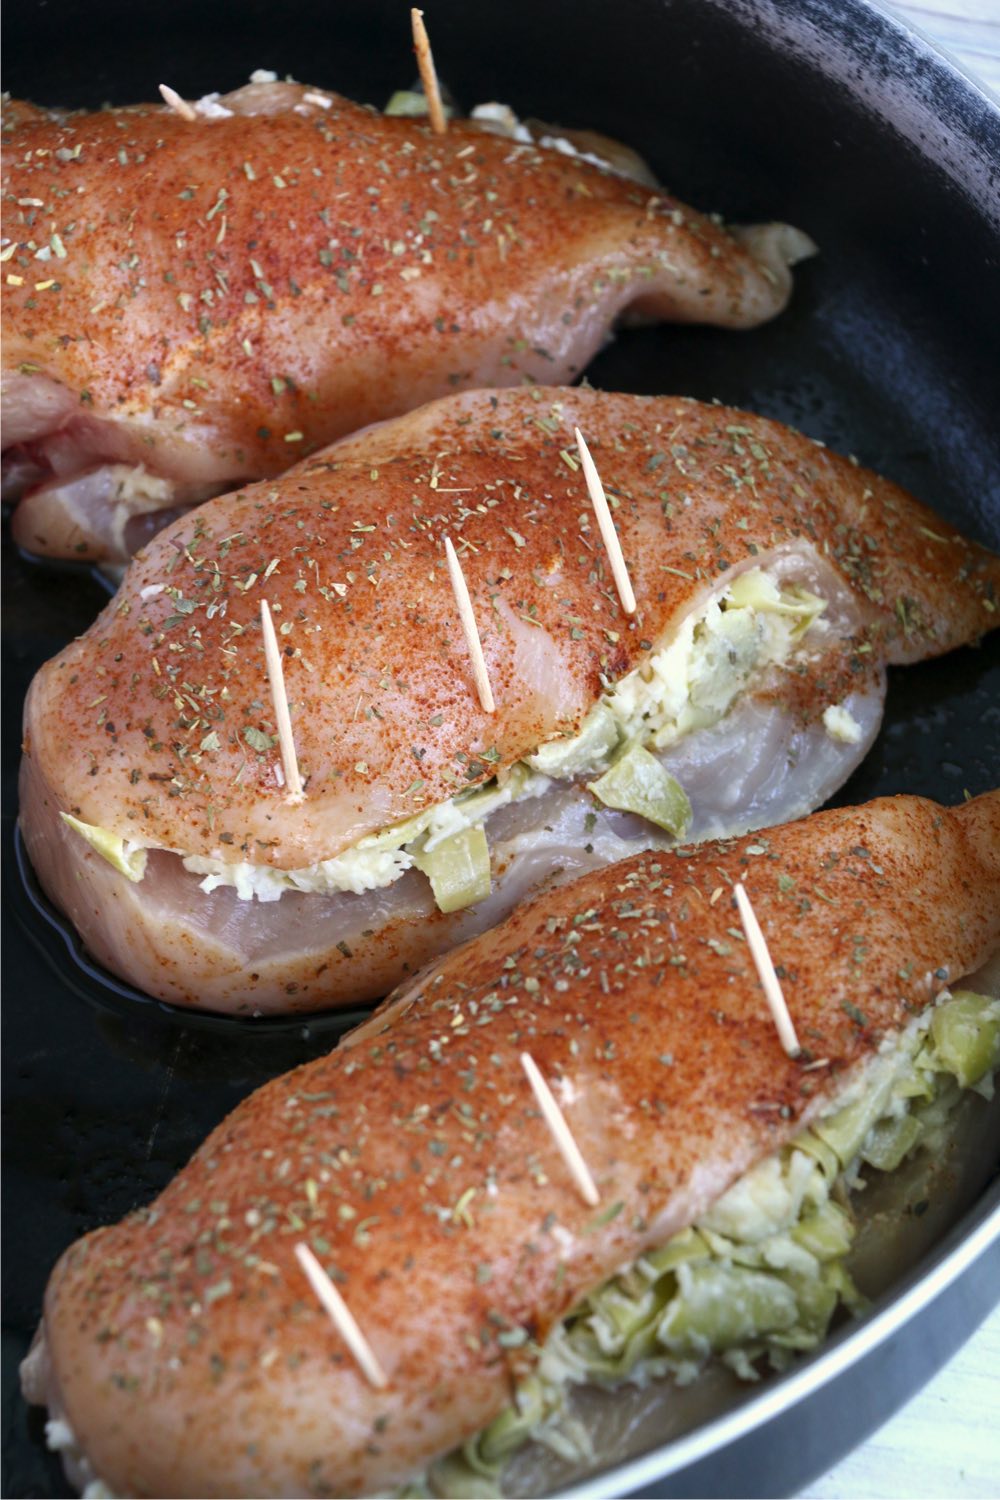 Artichoke stuffed chicken breasts in skillet